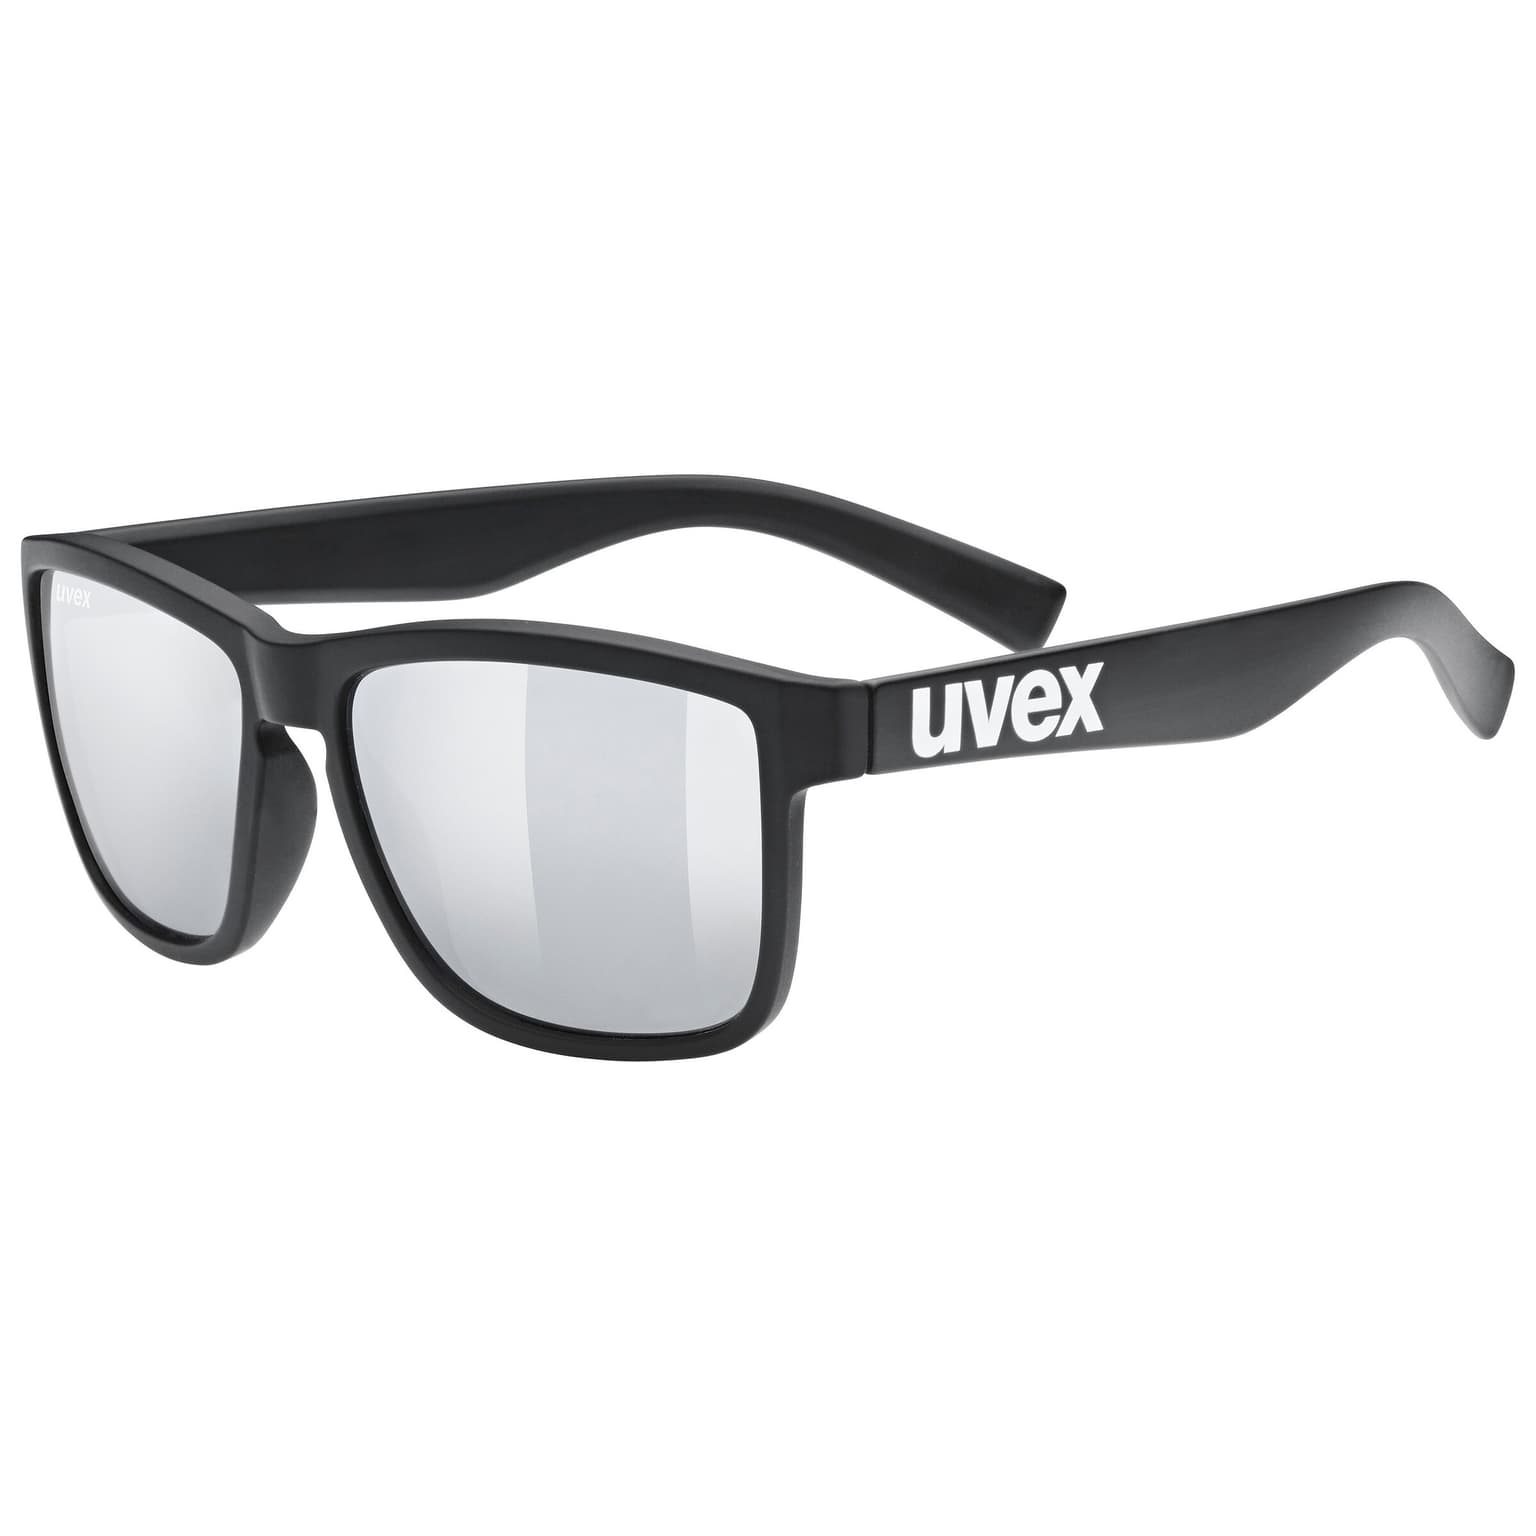 Uvex Uvex Lifestyle lgl 39 Sportbrille schwarz 1